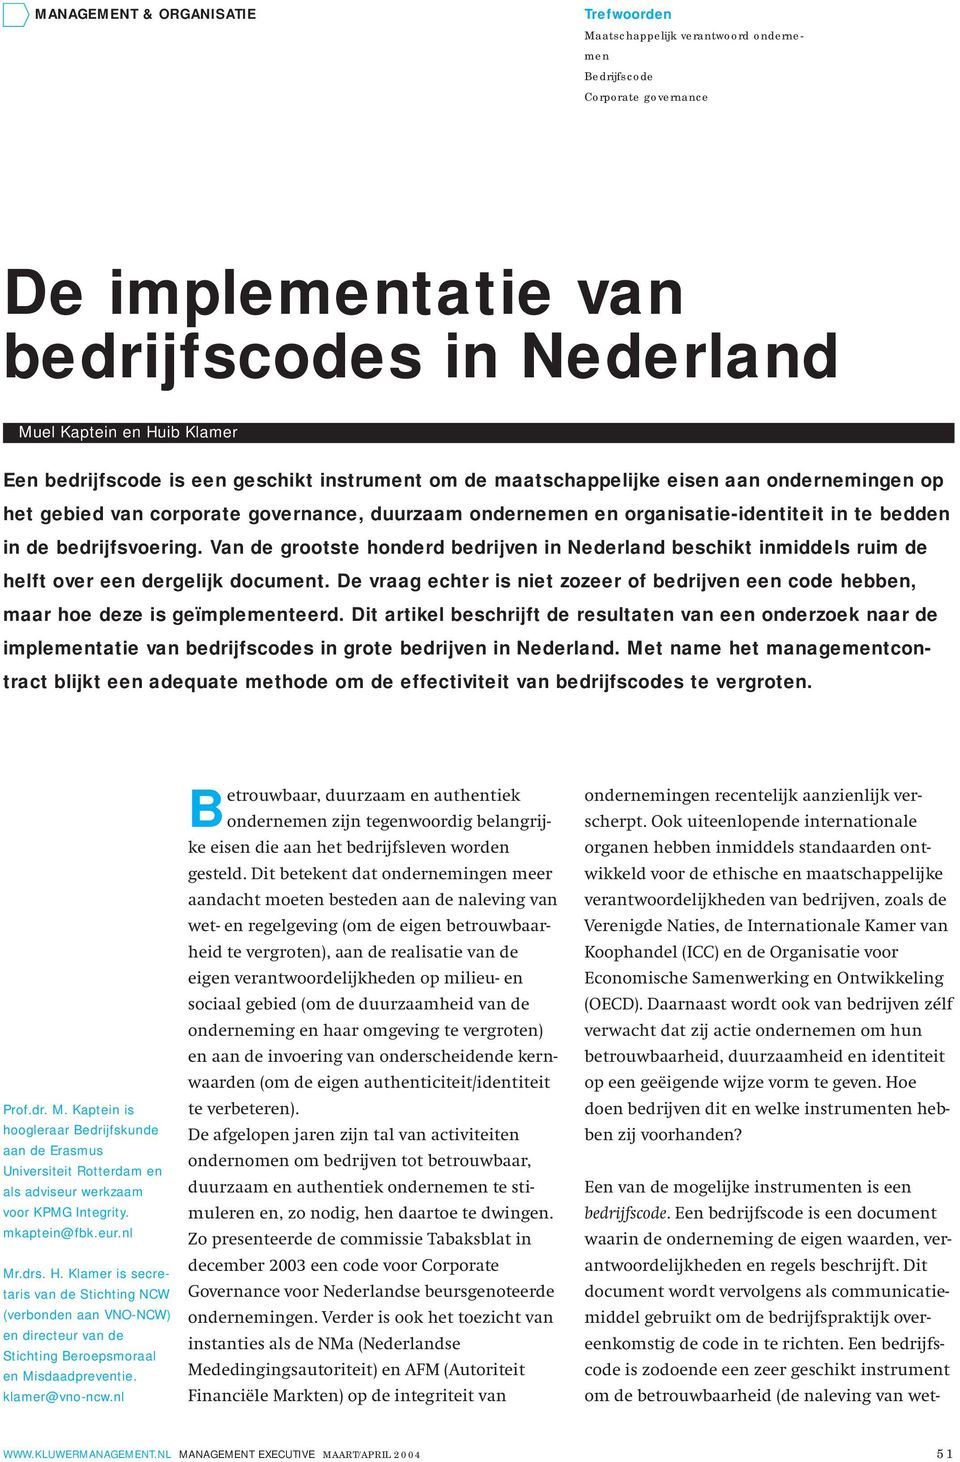 Van de grootste honderd bedrijven in Nederland beschikt inmiddels ruim de helft over een dergelijk document.